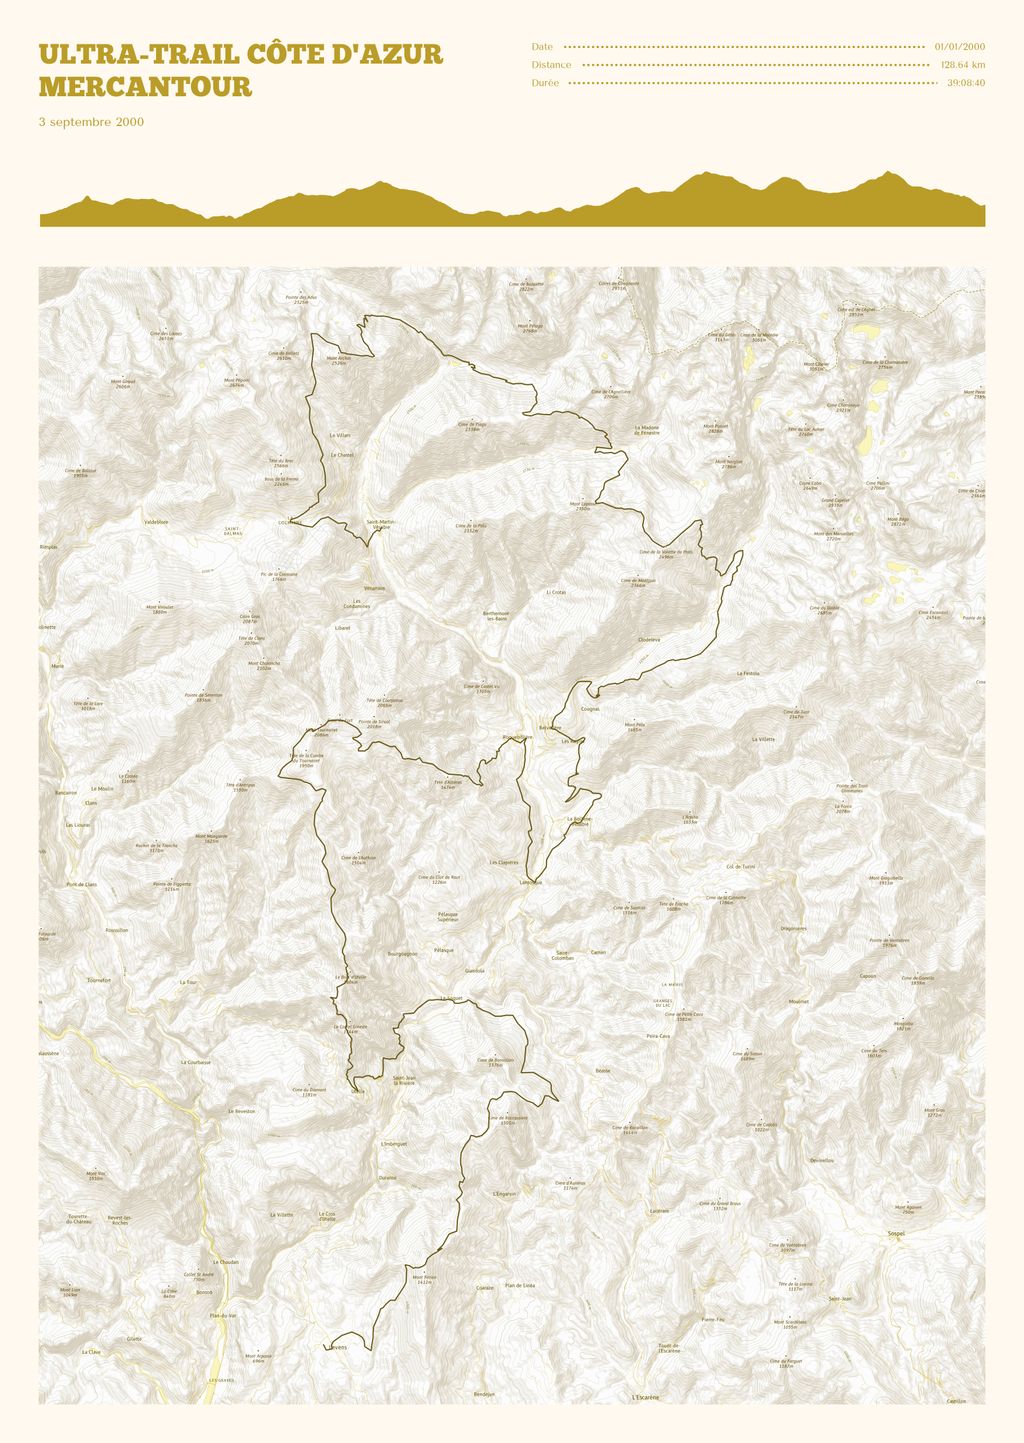 Póster con un mapa de Ultra-Trail Côte d'Azur Mercantour